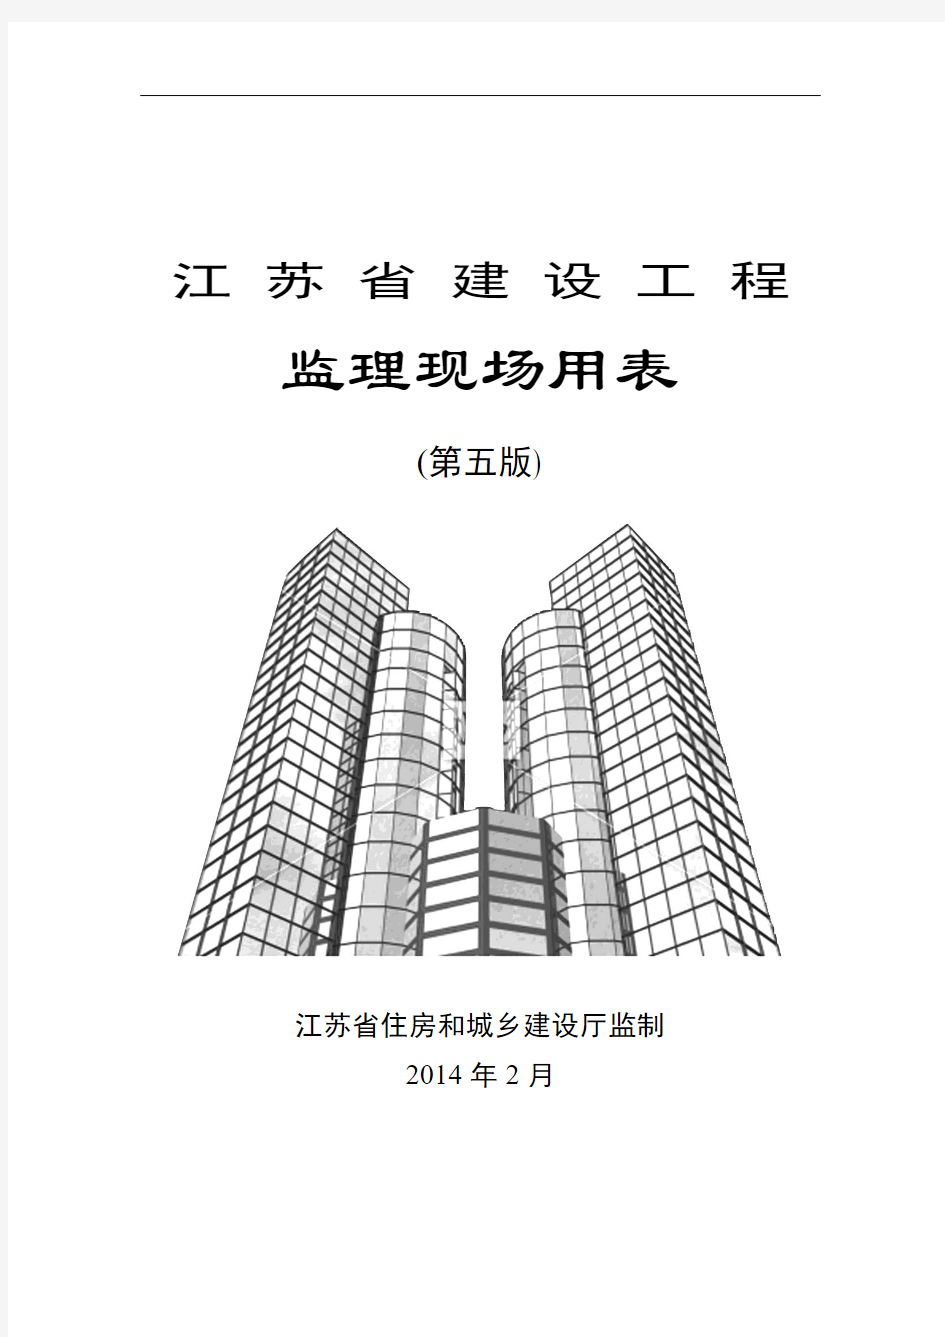 江苏省建设工程监理现场用表(第五版)(2014.3.1)